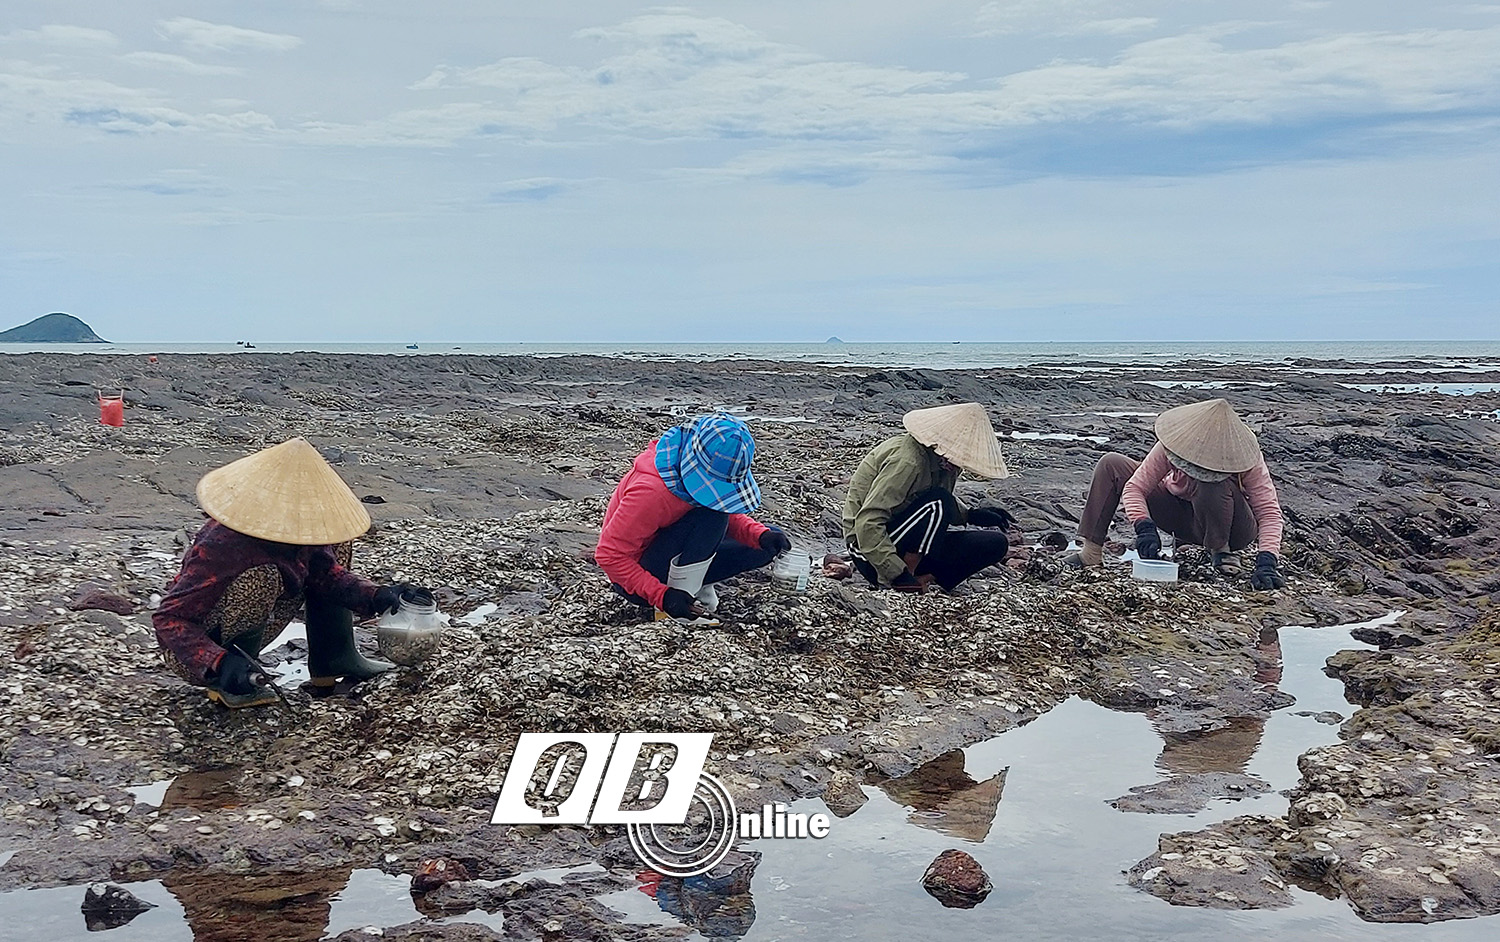  Những người phụ nữ ở thôn Nam Lãnh (Quảng Phú) mưu sinh bằng nghề “mổ” hàu trên bãi đá ngầm bên vịnh Hòn La.